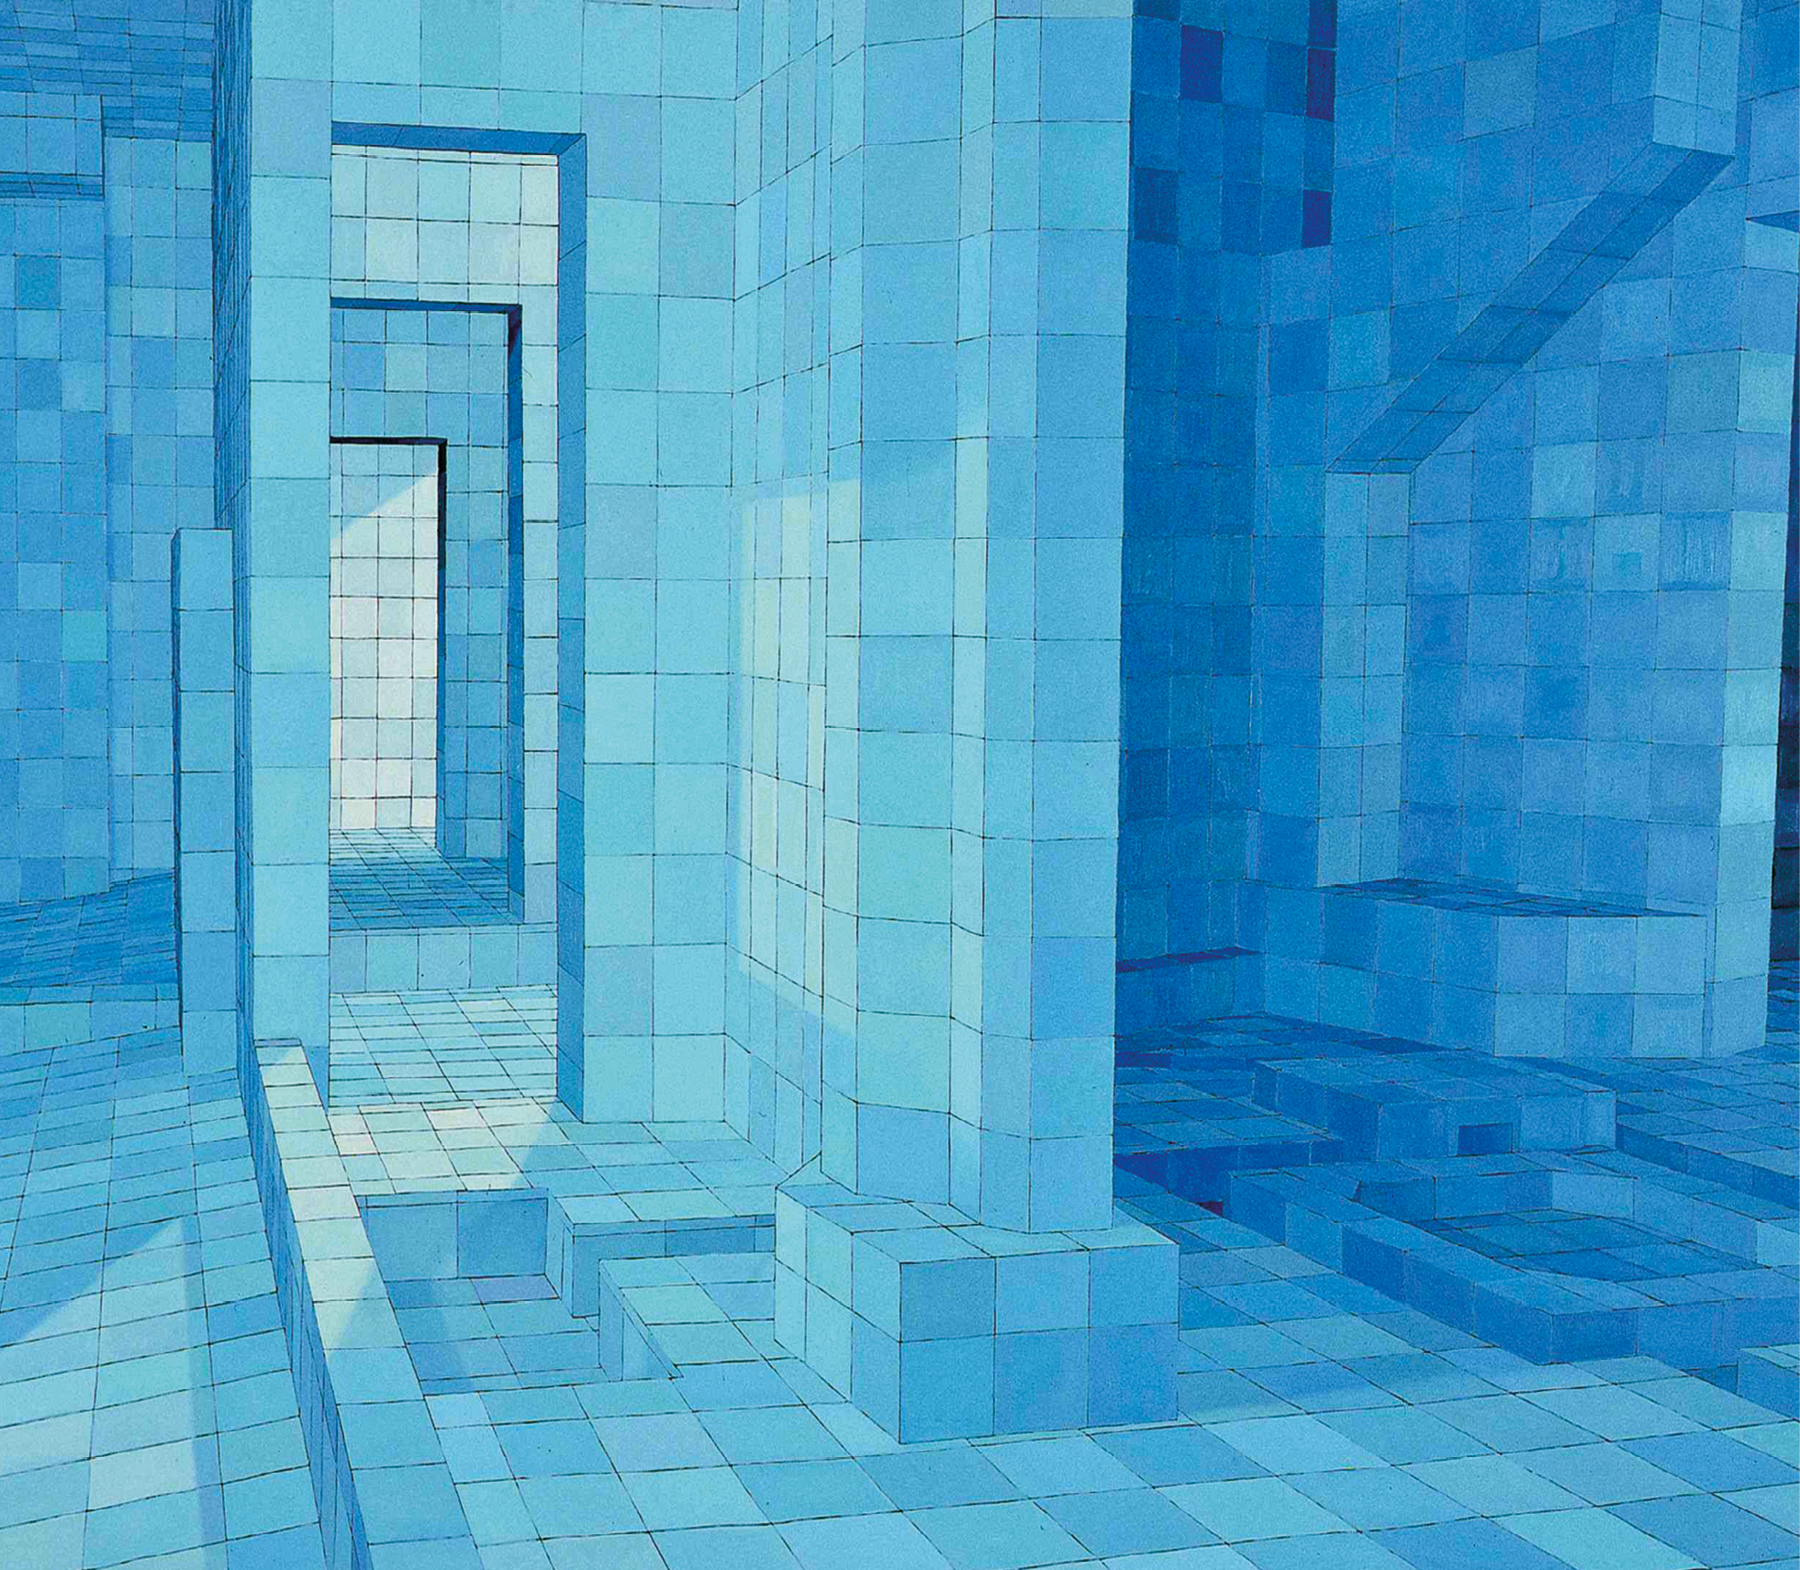 Pintura. Interior de um ambiente, parecido com uma sauna, composto por azulejos azuis, com recortes, nas paredes e no chão, para formação de bancos e degraus. Utilizando formas de polígonos e de poliedros, no centro da imagem há uma pilastra vertical e, à sua esquerda, há um corredor que leva para outras salas do ambiente. Ocorre a representação de contrastes através da aplicação de luz e sombra, utilizando para isso azulejos com diversos tons de azul.